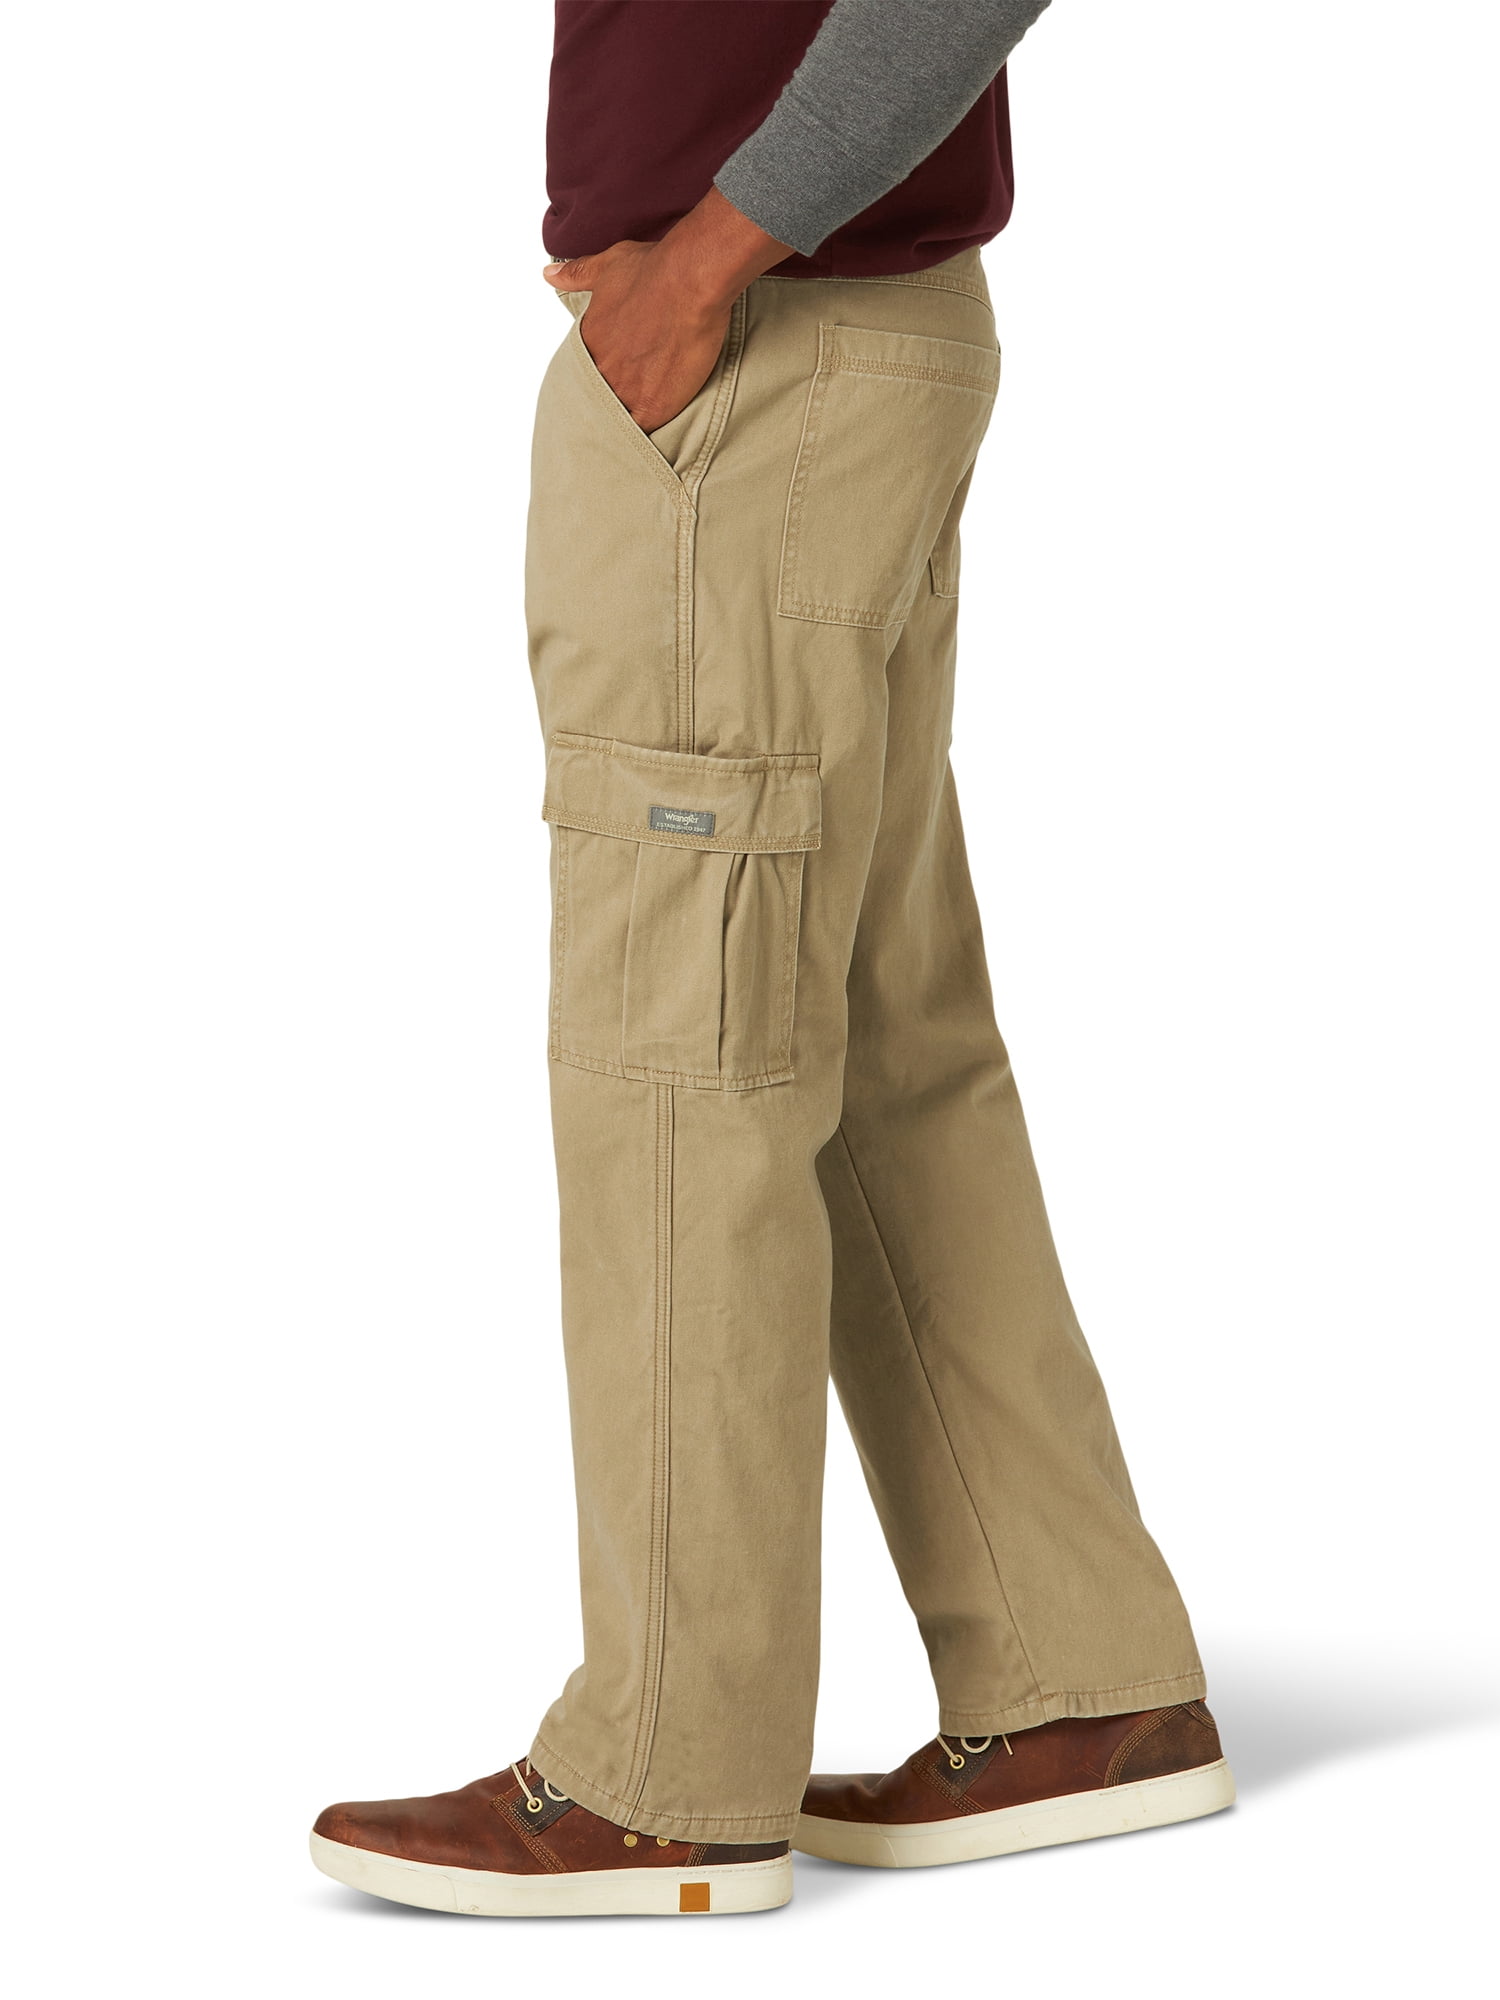 walmart wrangler lined pants